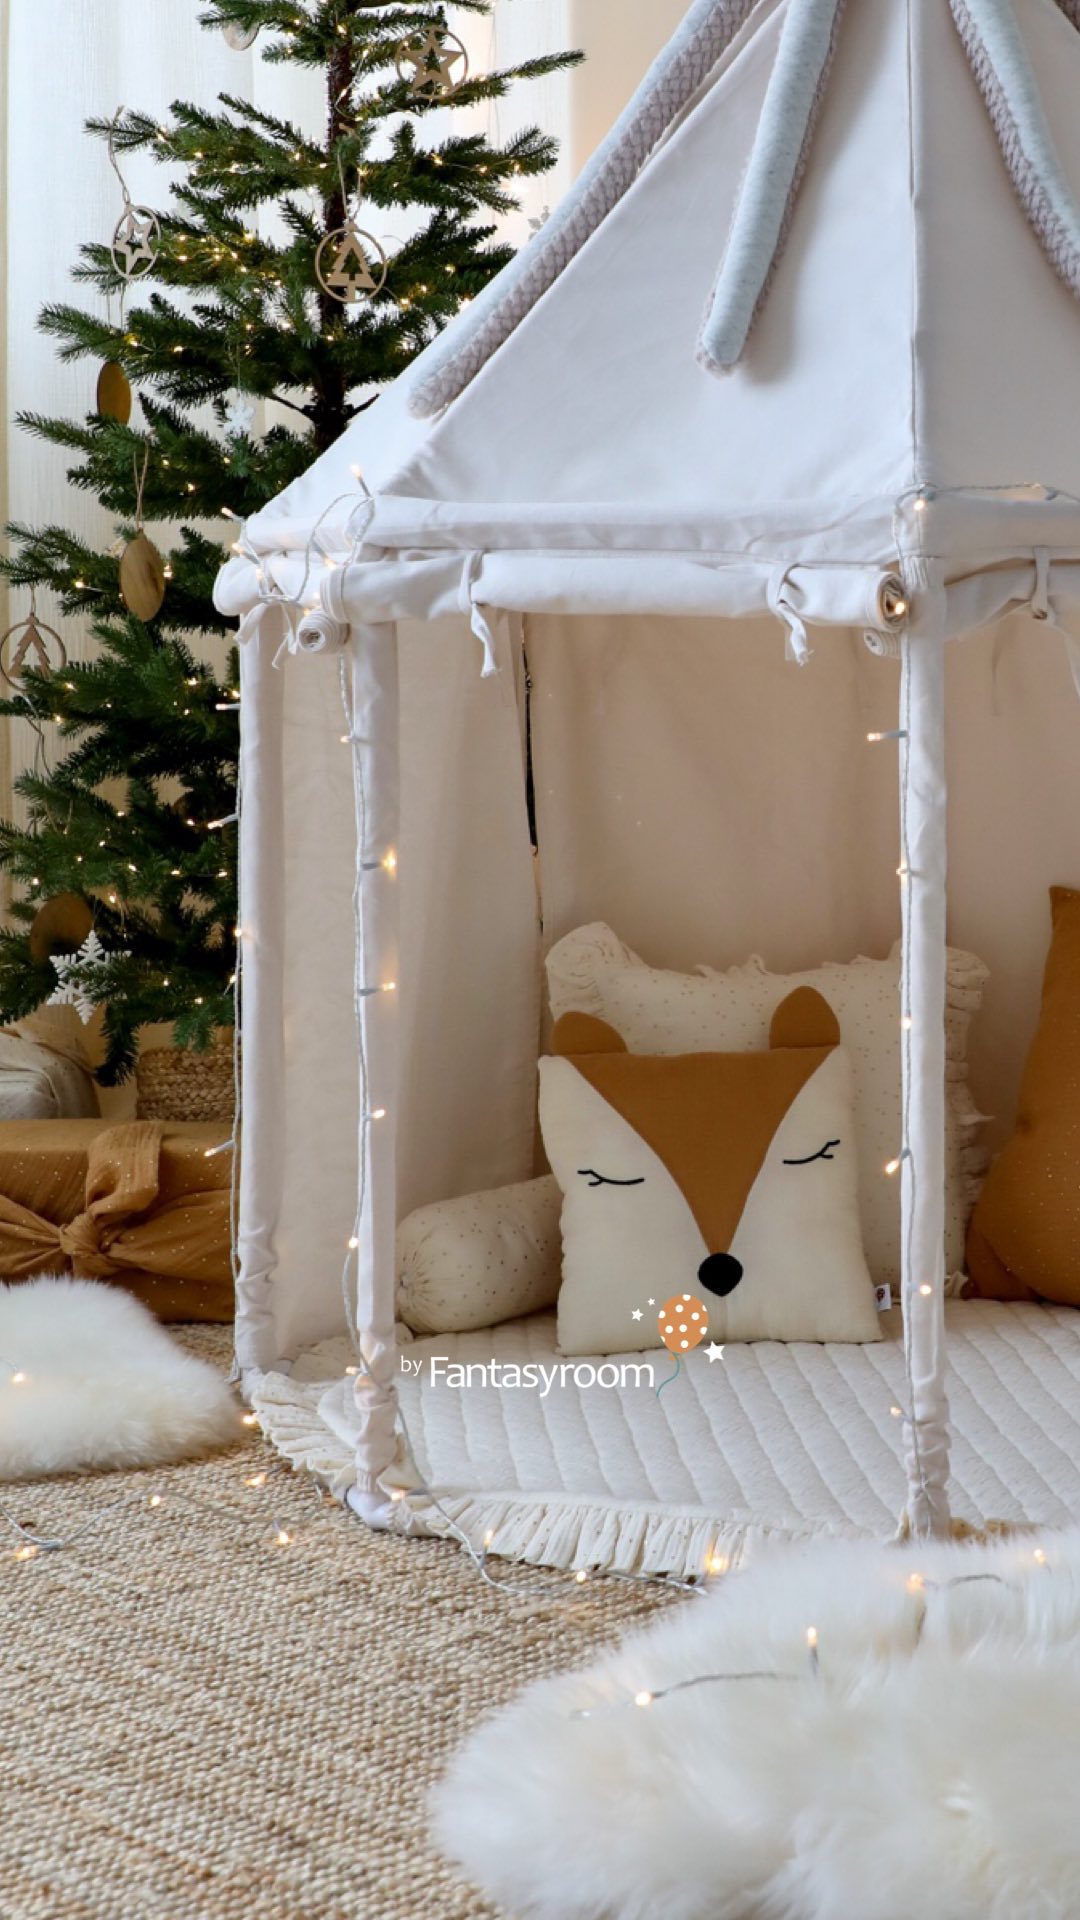 Schon bei der Verlosung mitgemacht? 🥳 Ihr könnt diesen wunderbaren Pavillon und die passende Spielmatte gewinnen! Bis einschl. Donnerstag ist noch Zeit - viel Glück! 🍀⁠
⁠
my-fantasyroom.de | dinkiballoon.com ✨⁠
.⁠
.⁠
.⁠
#weihnachten #xmas #weihnachtsgeschenke #geschenkefürkinder #giftsforkids #geschenkideen #weihnachtszeit #myfantasyroom #fantasyroomdeko #fantasyroom #dekoration #barnrum #barnerom #roominspiration #interior4all #decoration #kinderzimmer #kinderzimmerdeko #kinderzimmerideen #kinderzimmerinspo #kinderzimmerdekoration #kinderzimmereinrichtung #kinderzimmerinspiration #kidsroom #kidsroomdecor #kidsroominspo #kidsroomideas #weihnachtsgewinnspiel #kidsconcept #dinkiballoon